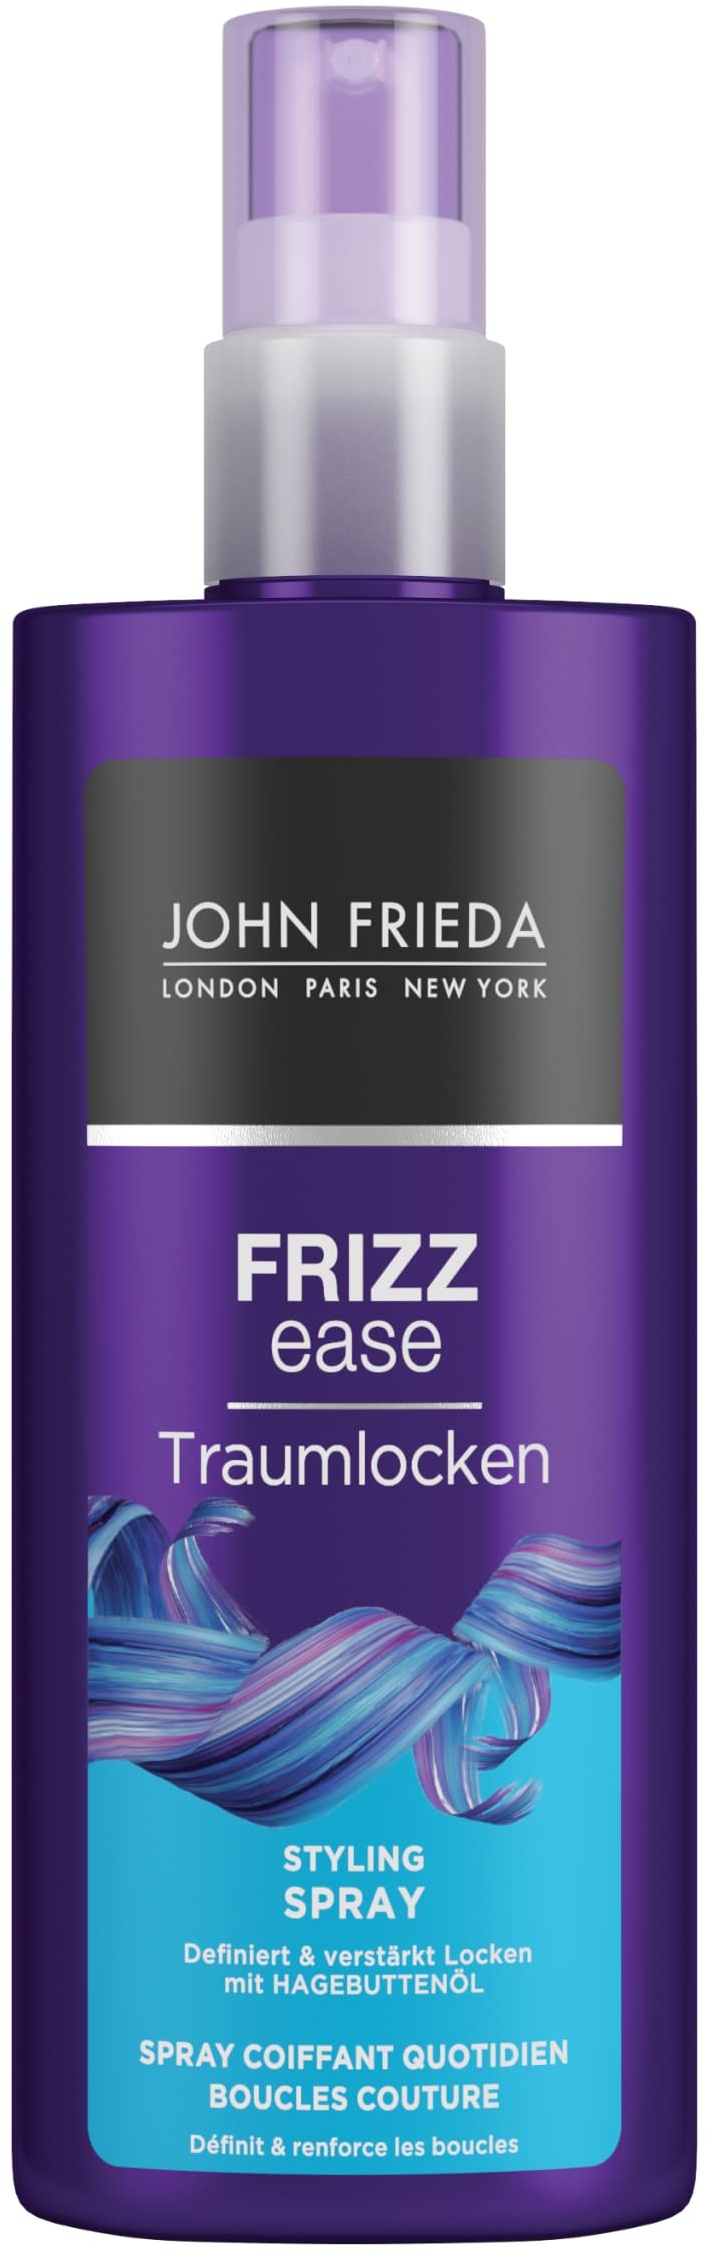 John Frieda Frizz Ease Traumlocken Tägliches Styling Spray - (200 ml) - verleiht natürlichen Locken Form, Elastizität und Sprungkraft